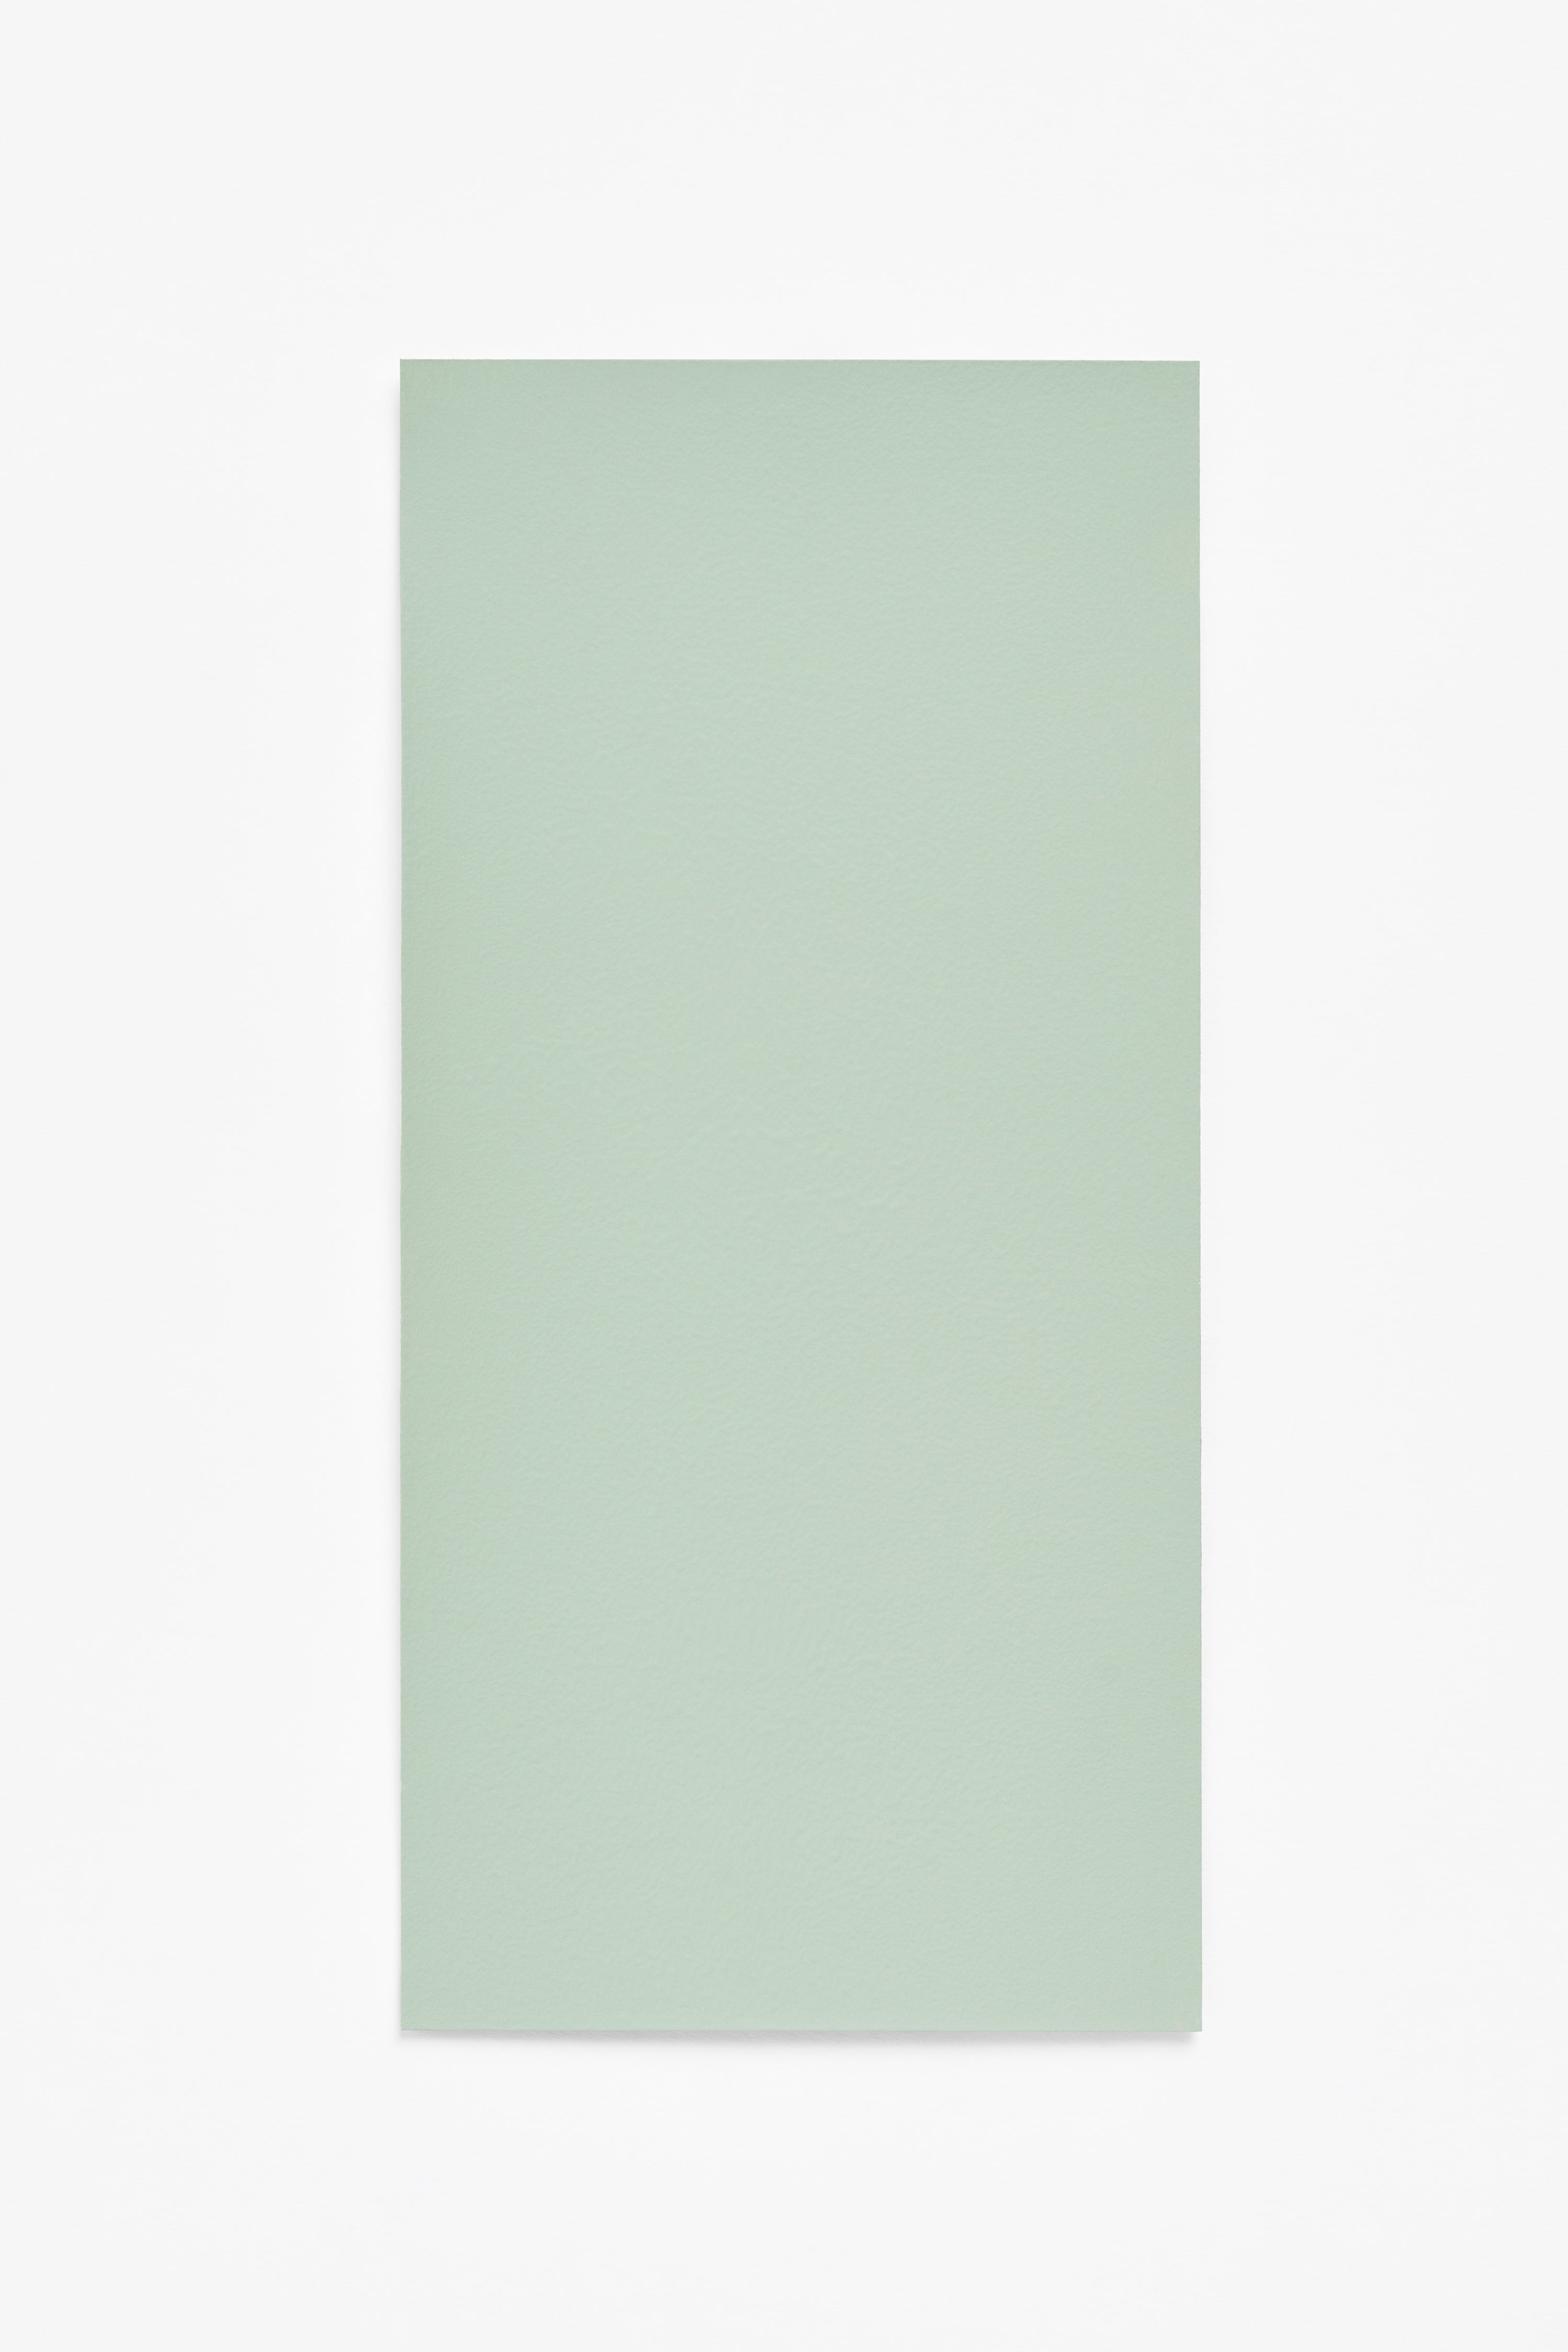 Pini — a paint colour developed by Studio Stefan Scholten for Blēo